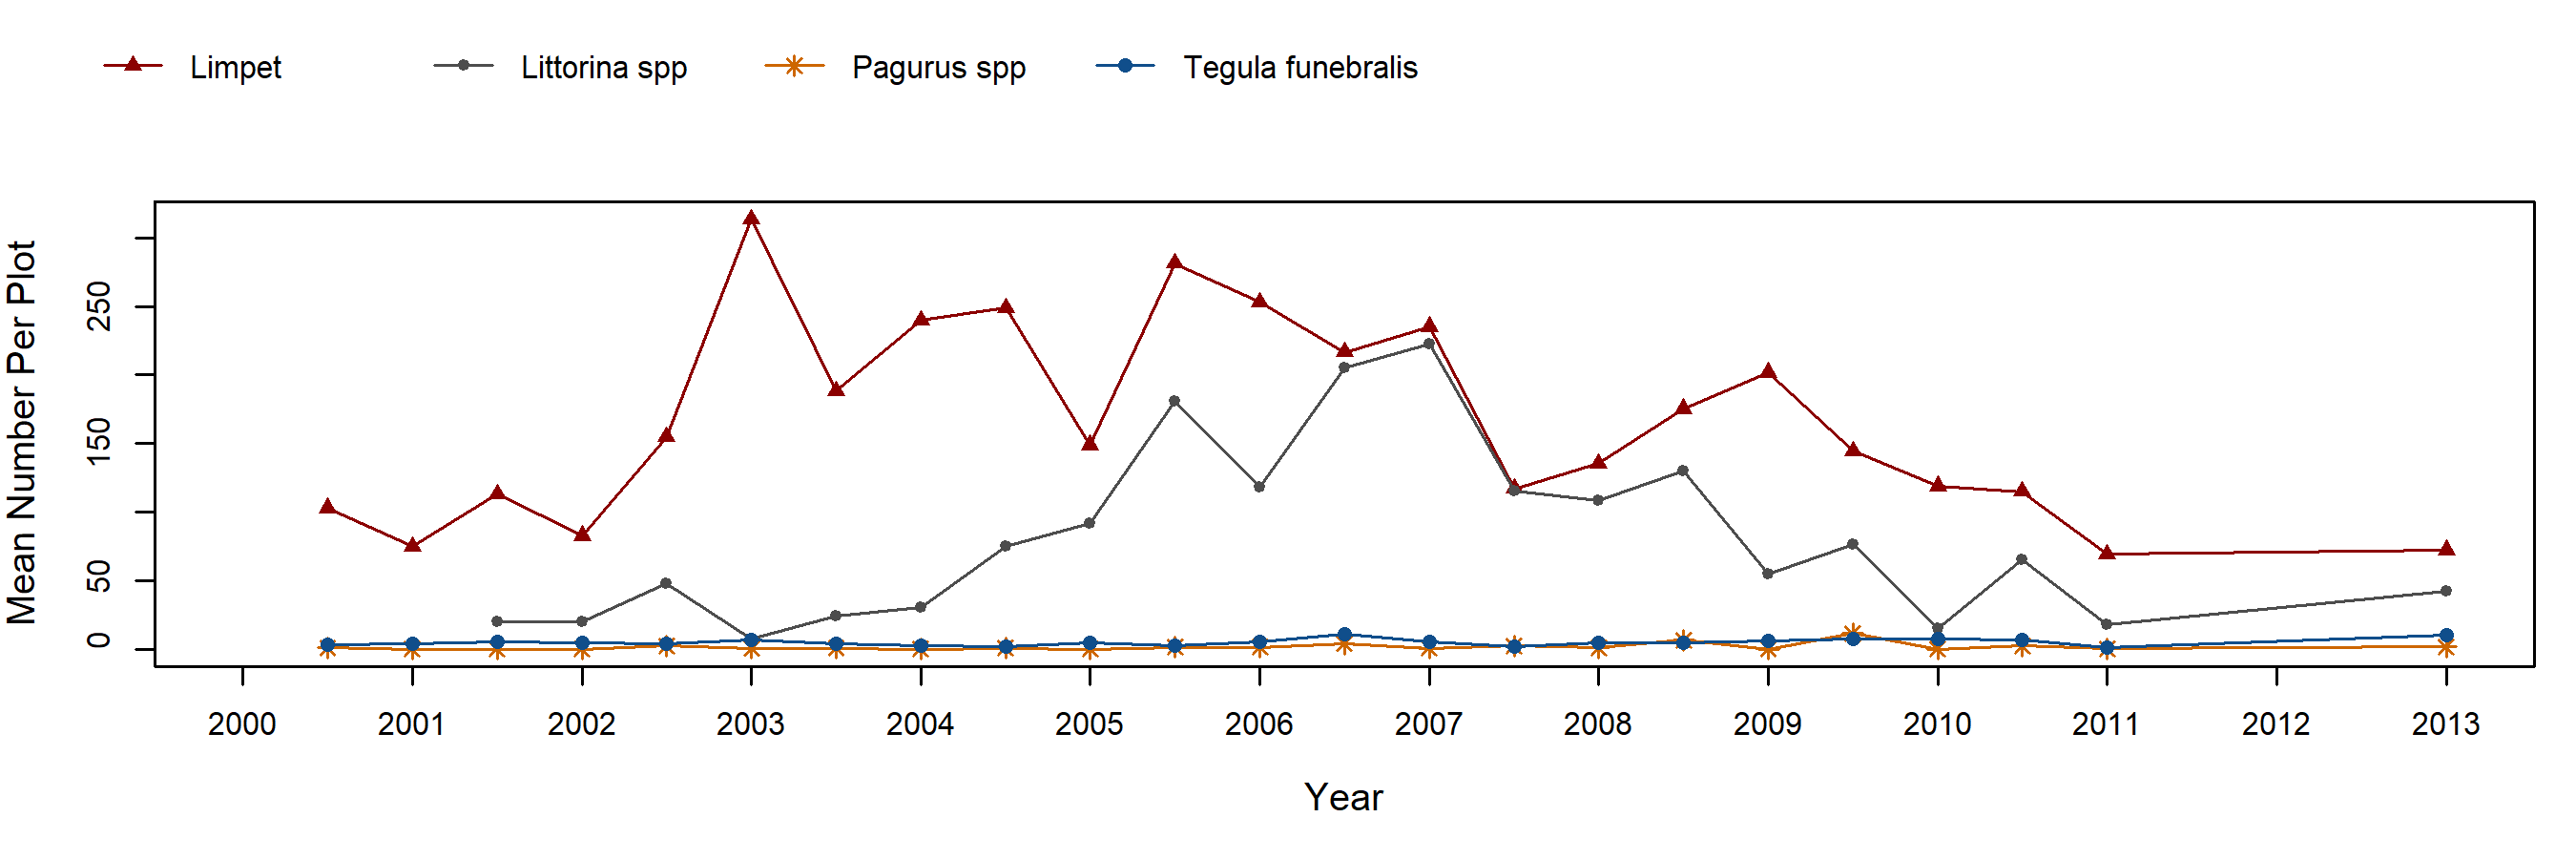 Cayucos Endocladia trend plot